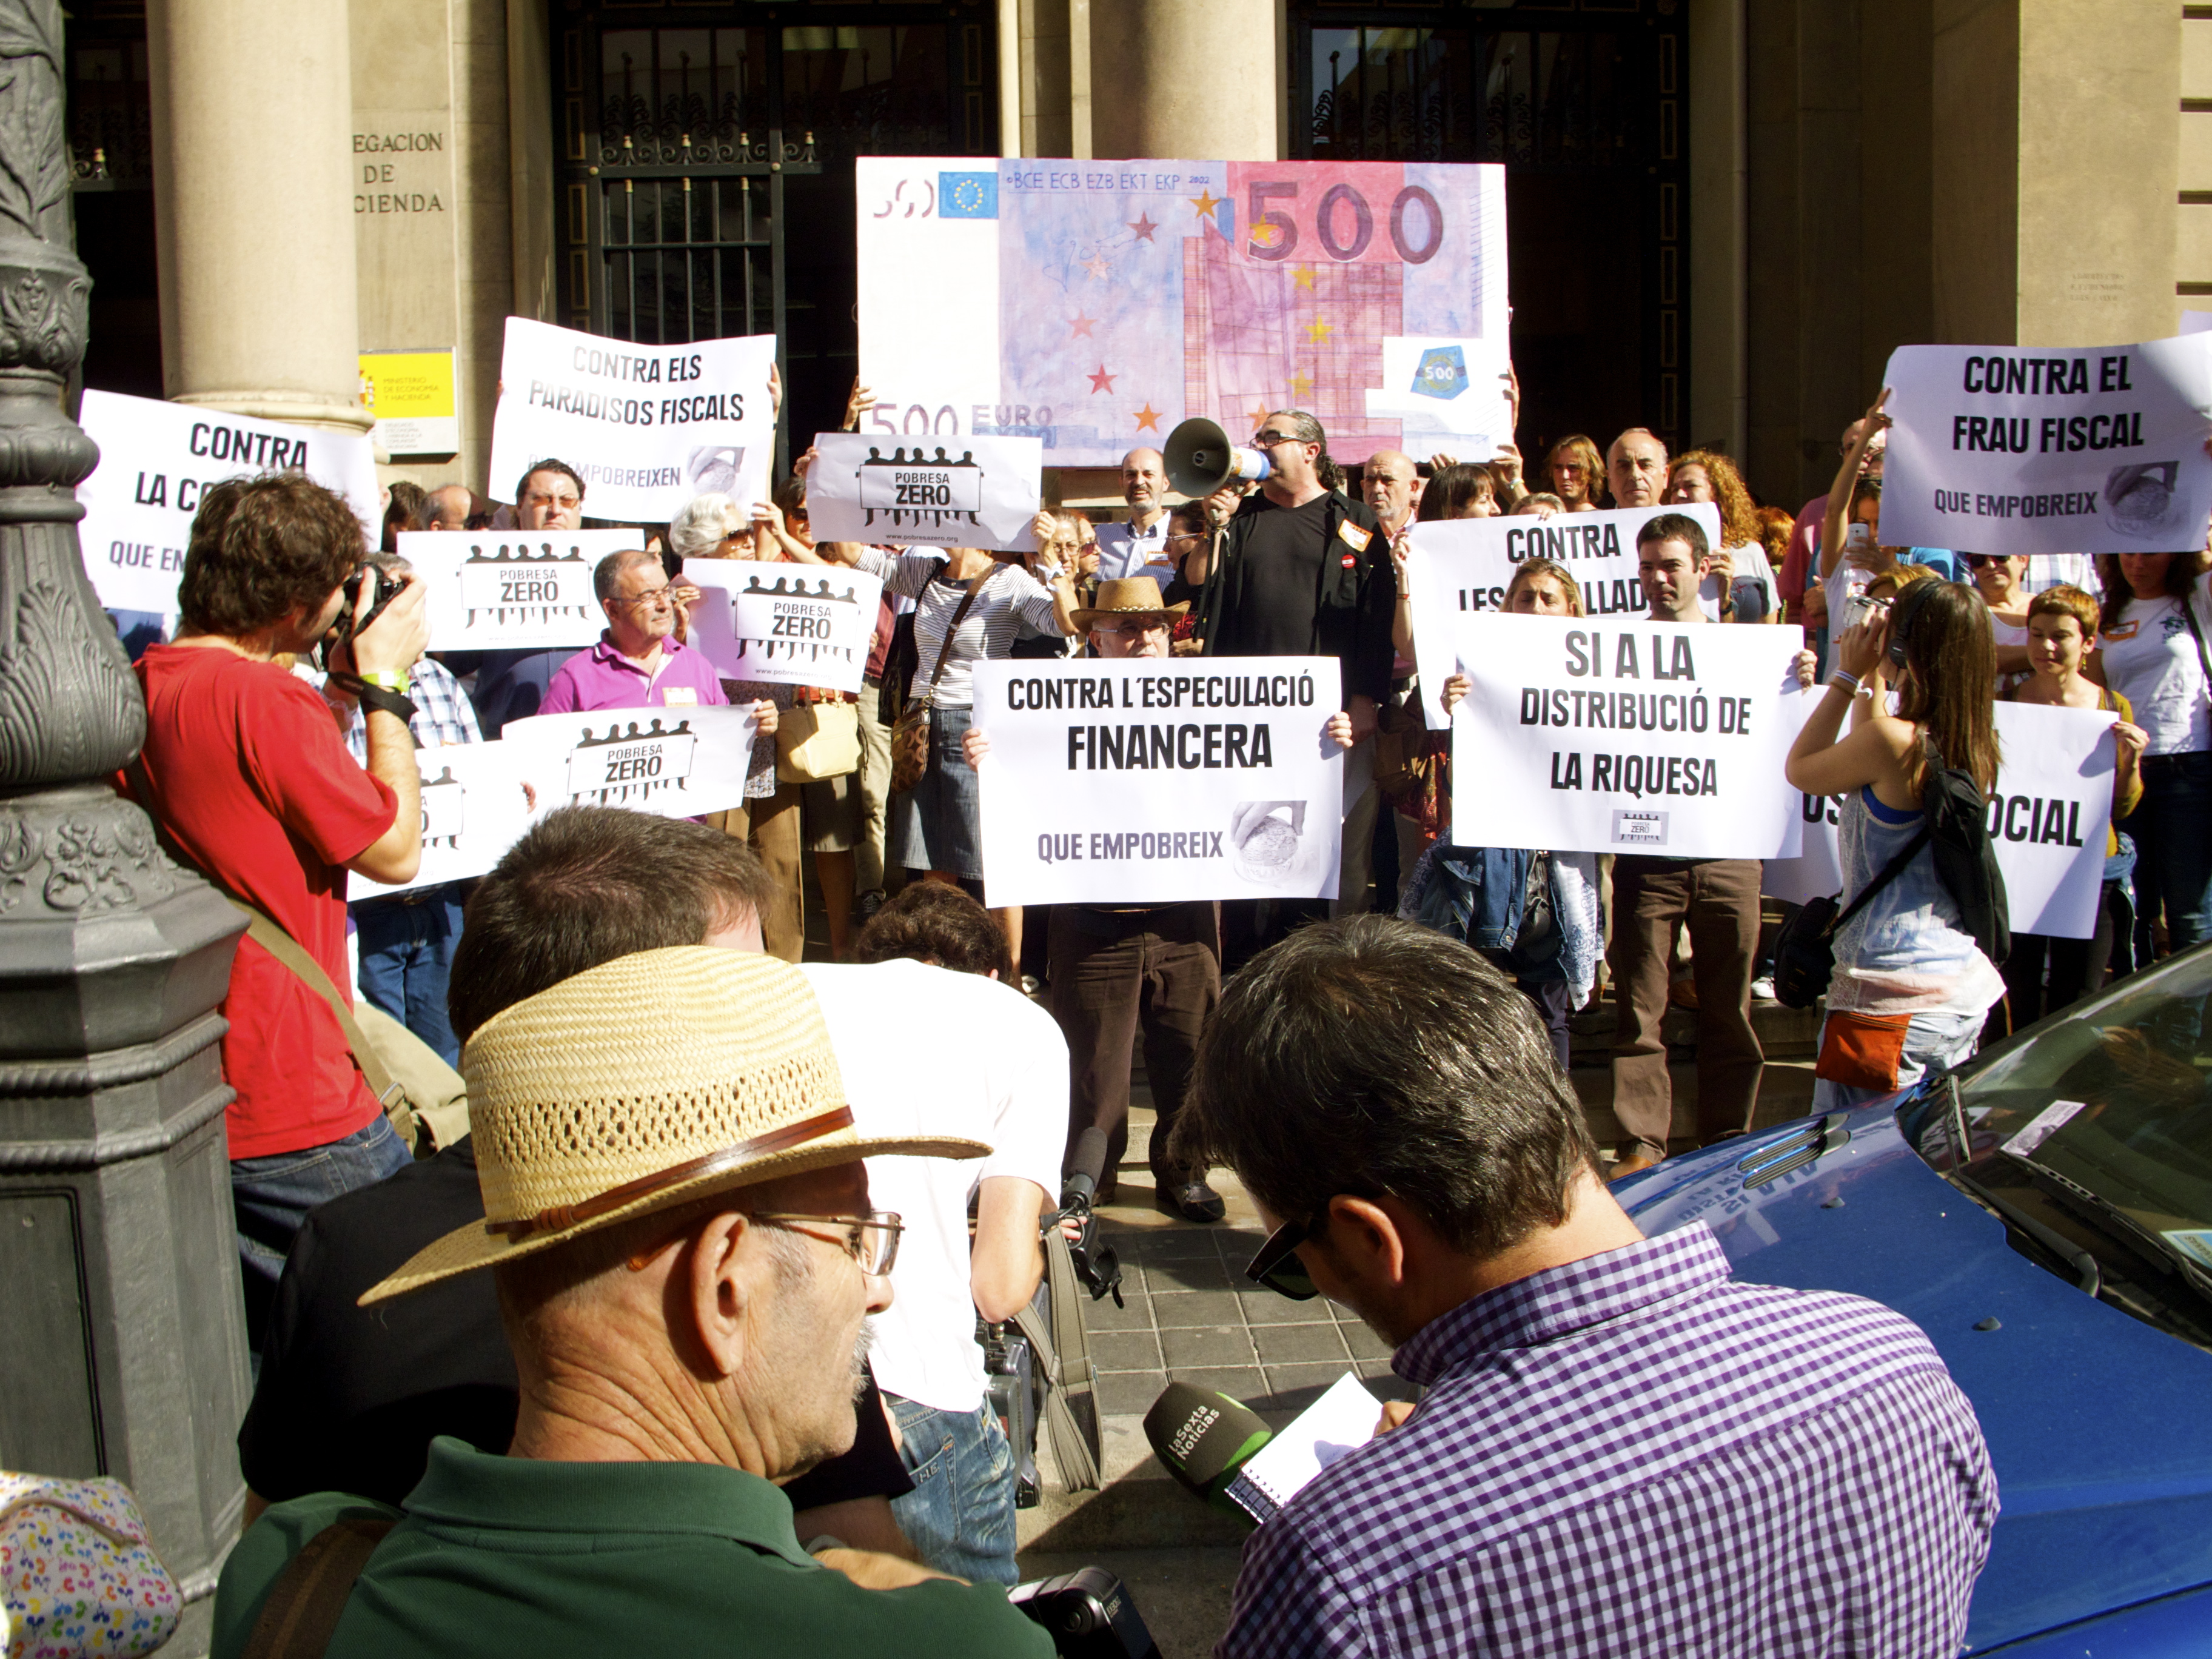 La Xarxa EAPN CV en la concentración de Pobresa Zero frente a la Delegación de Hacienda en Valencia contra el fraude fiscal y la riqueza que empobrece. El #17O 